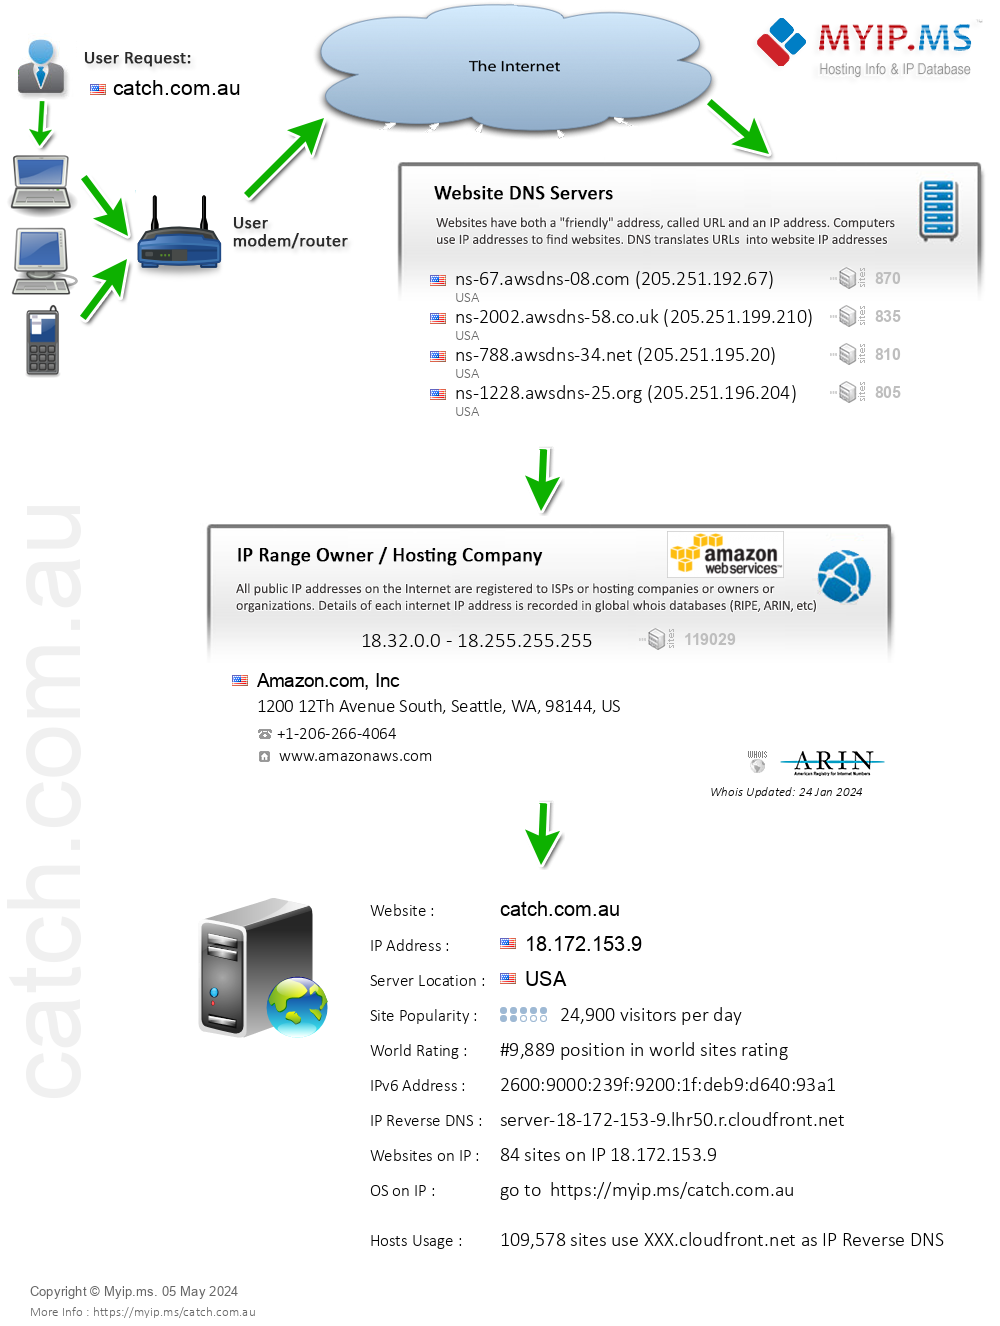 Catch.com.au - Website Hosting Visual IP Diagram